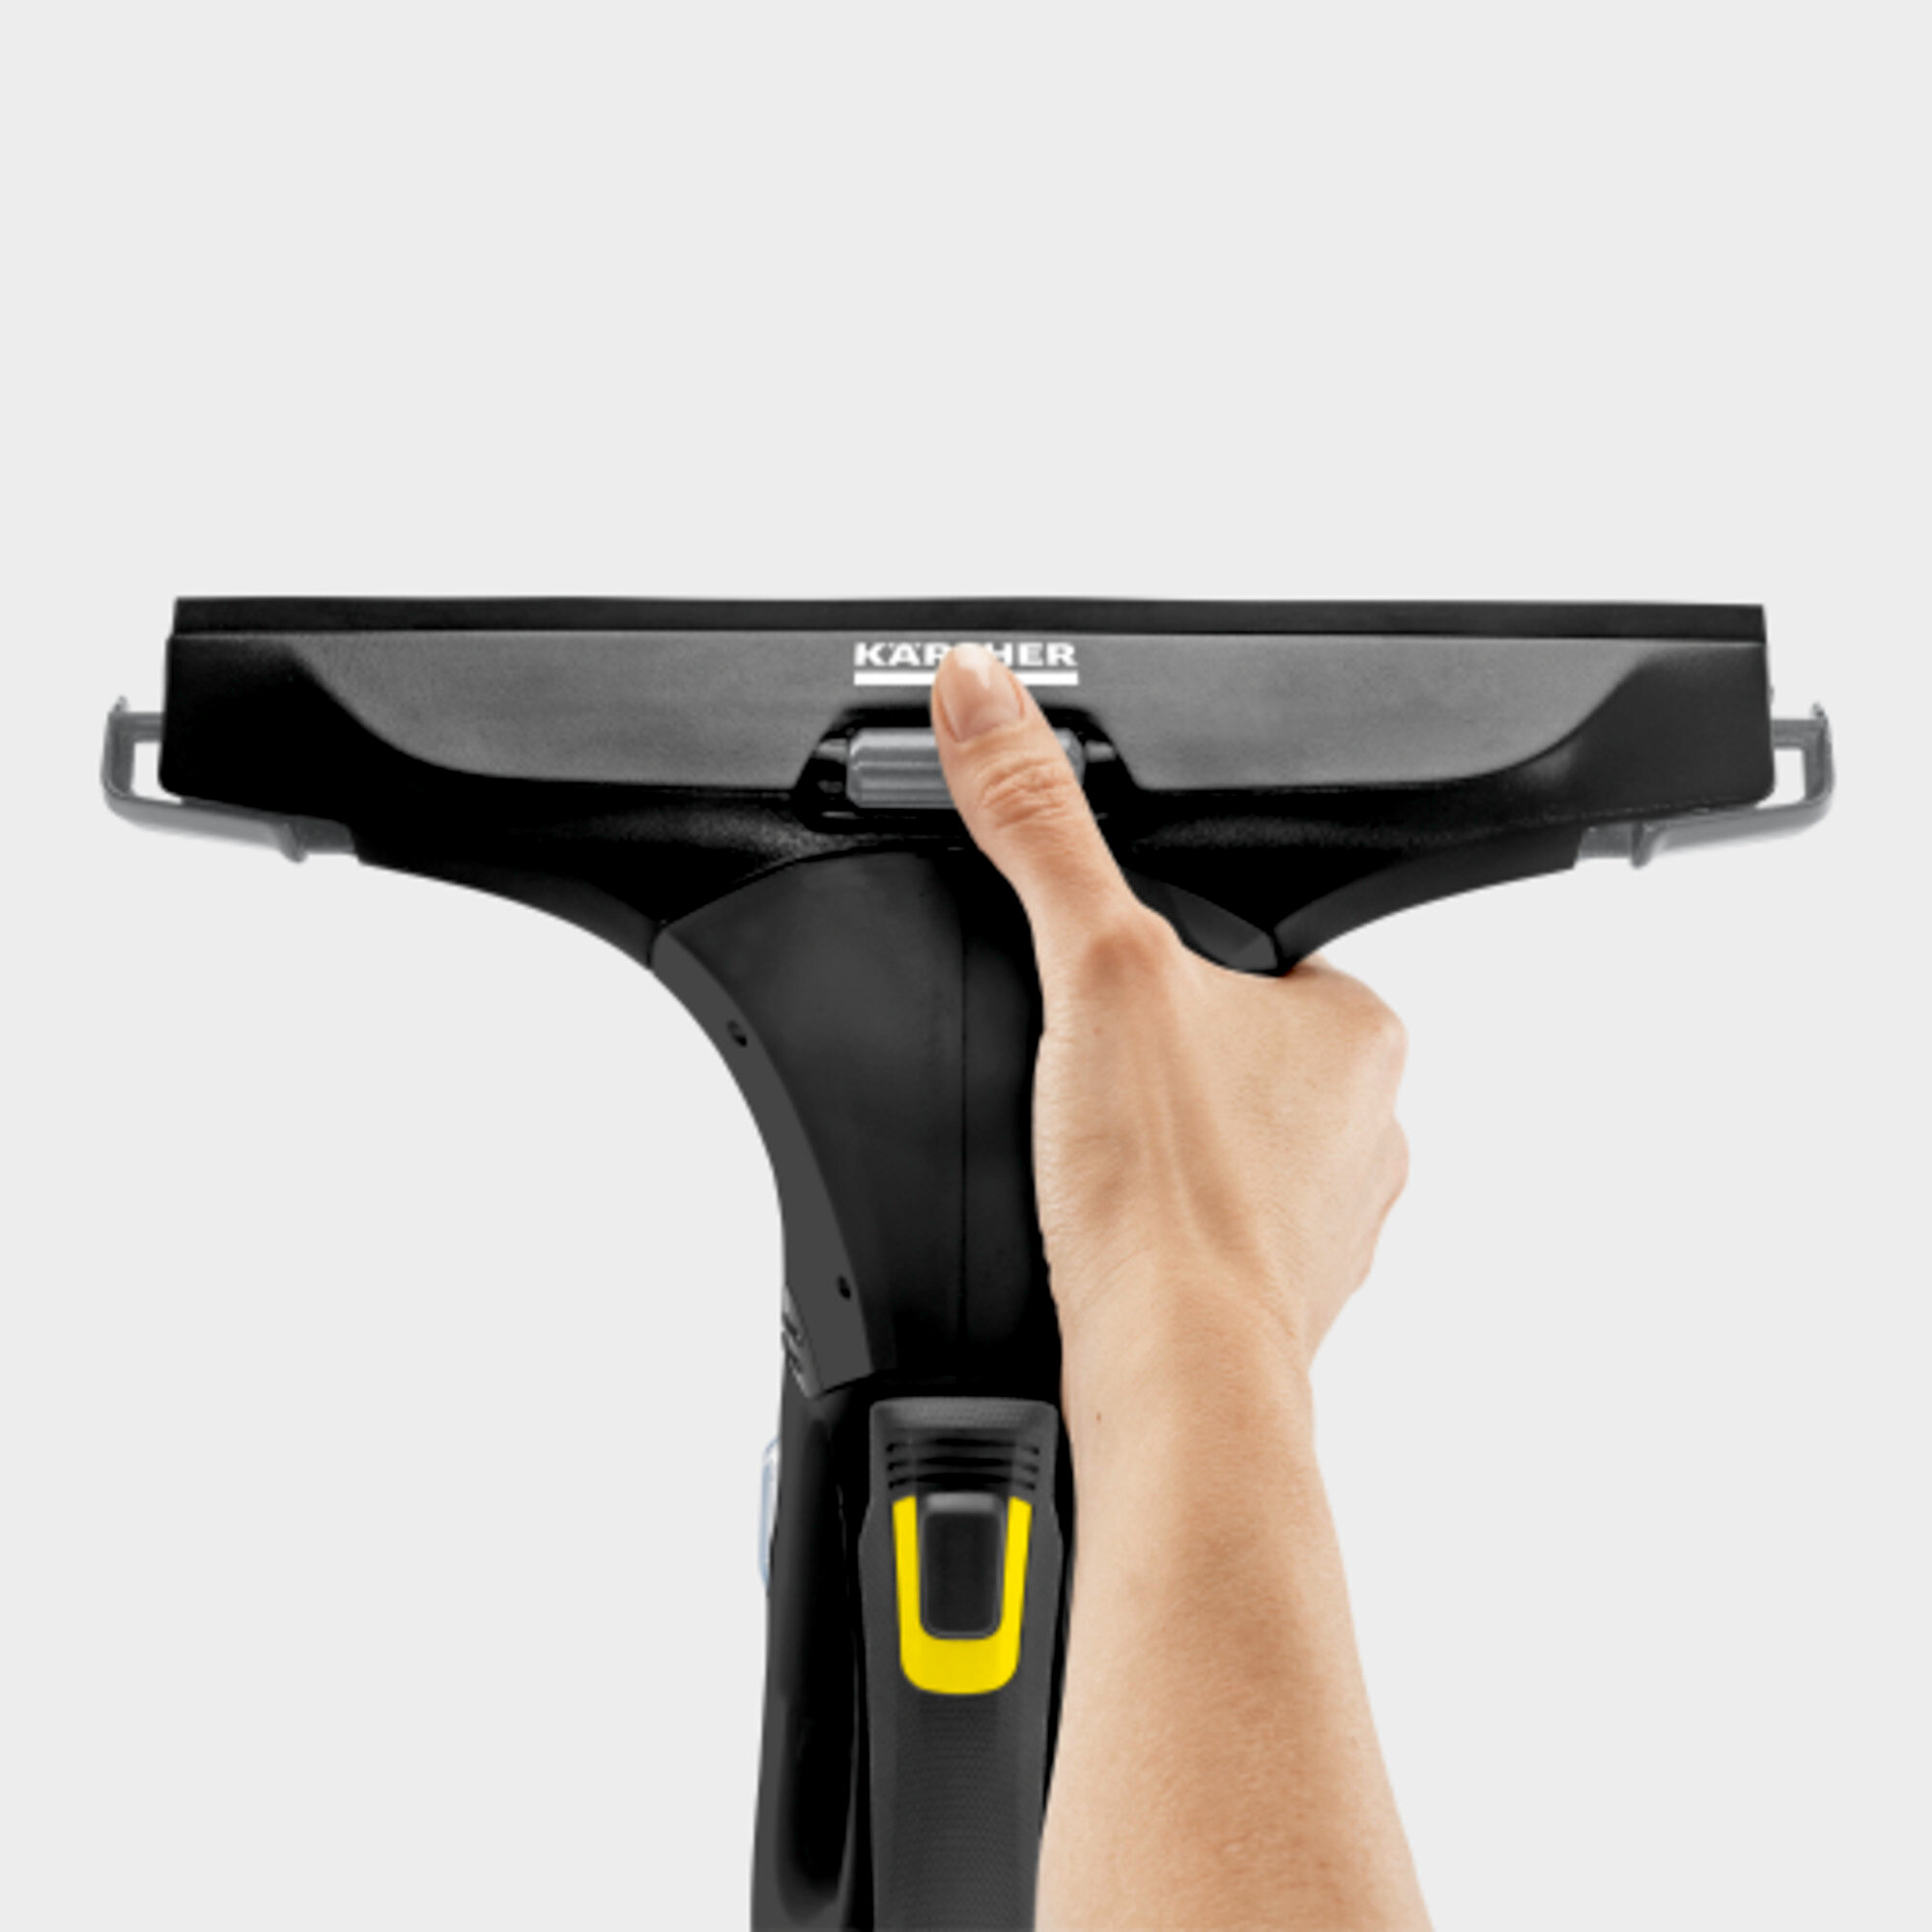 Şarjlı Cam Temizleme WV 5 Plus N Black Edıtıon Şarjlı Cam Temizleme Makinesi: Uygun kenar temizliği